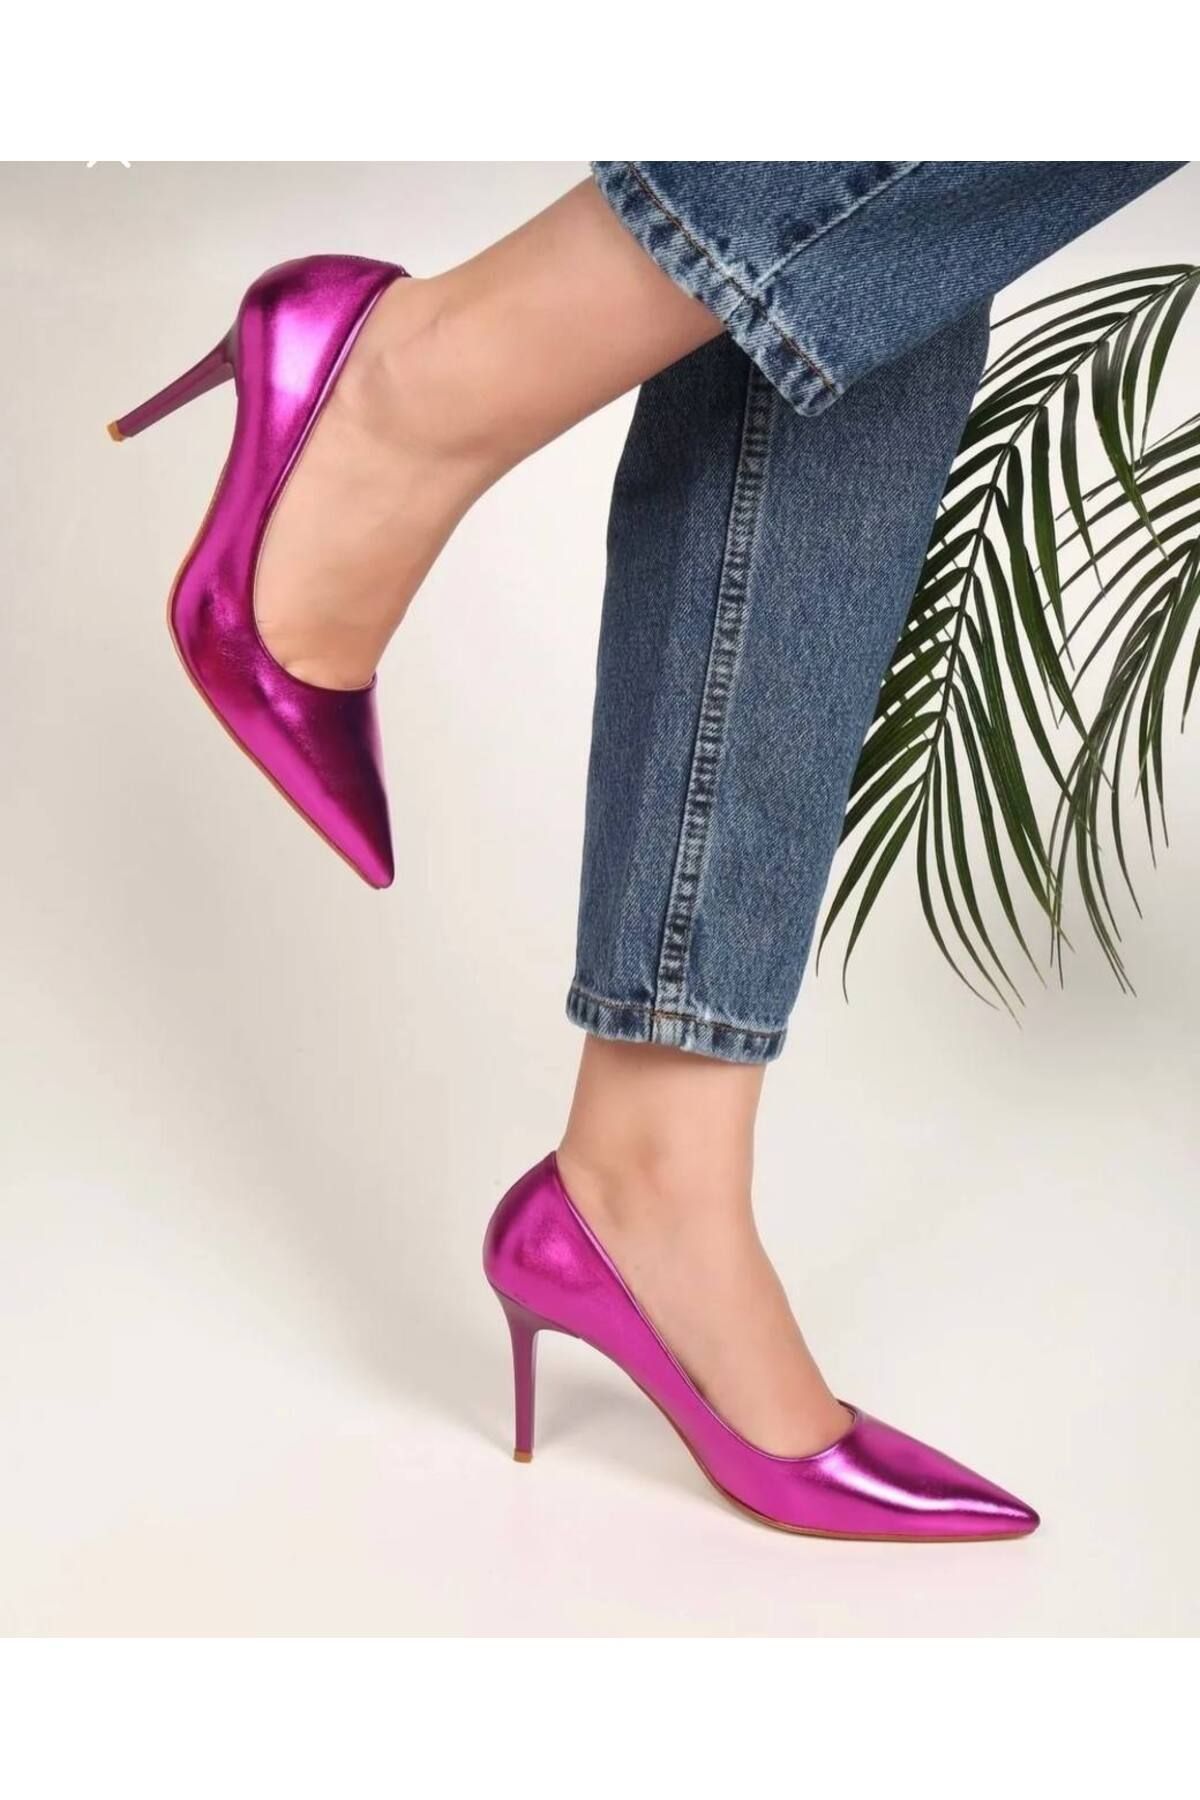 Essen kadın metalik klasik topuklu ayakkabı stiletto